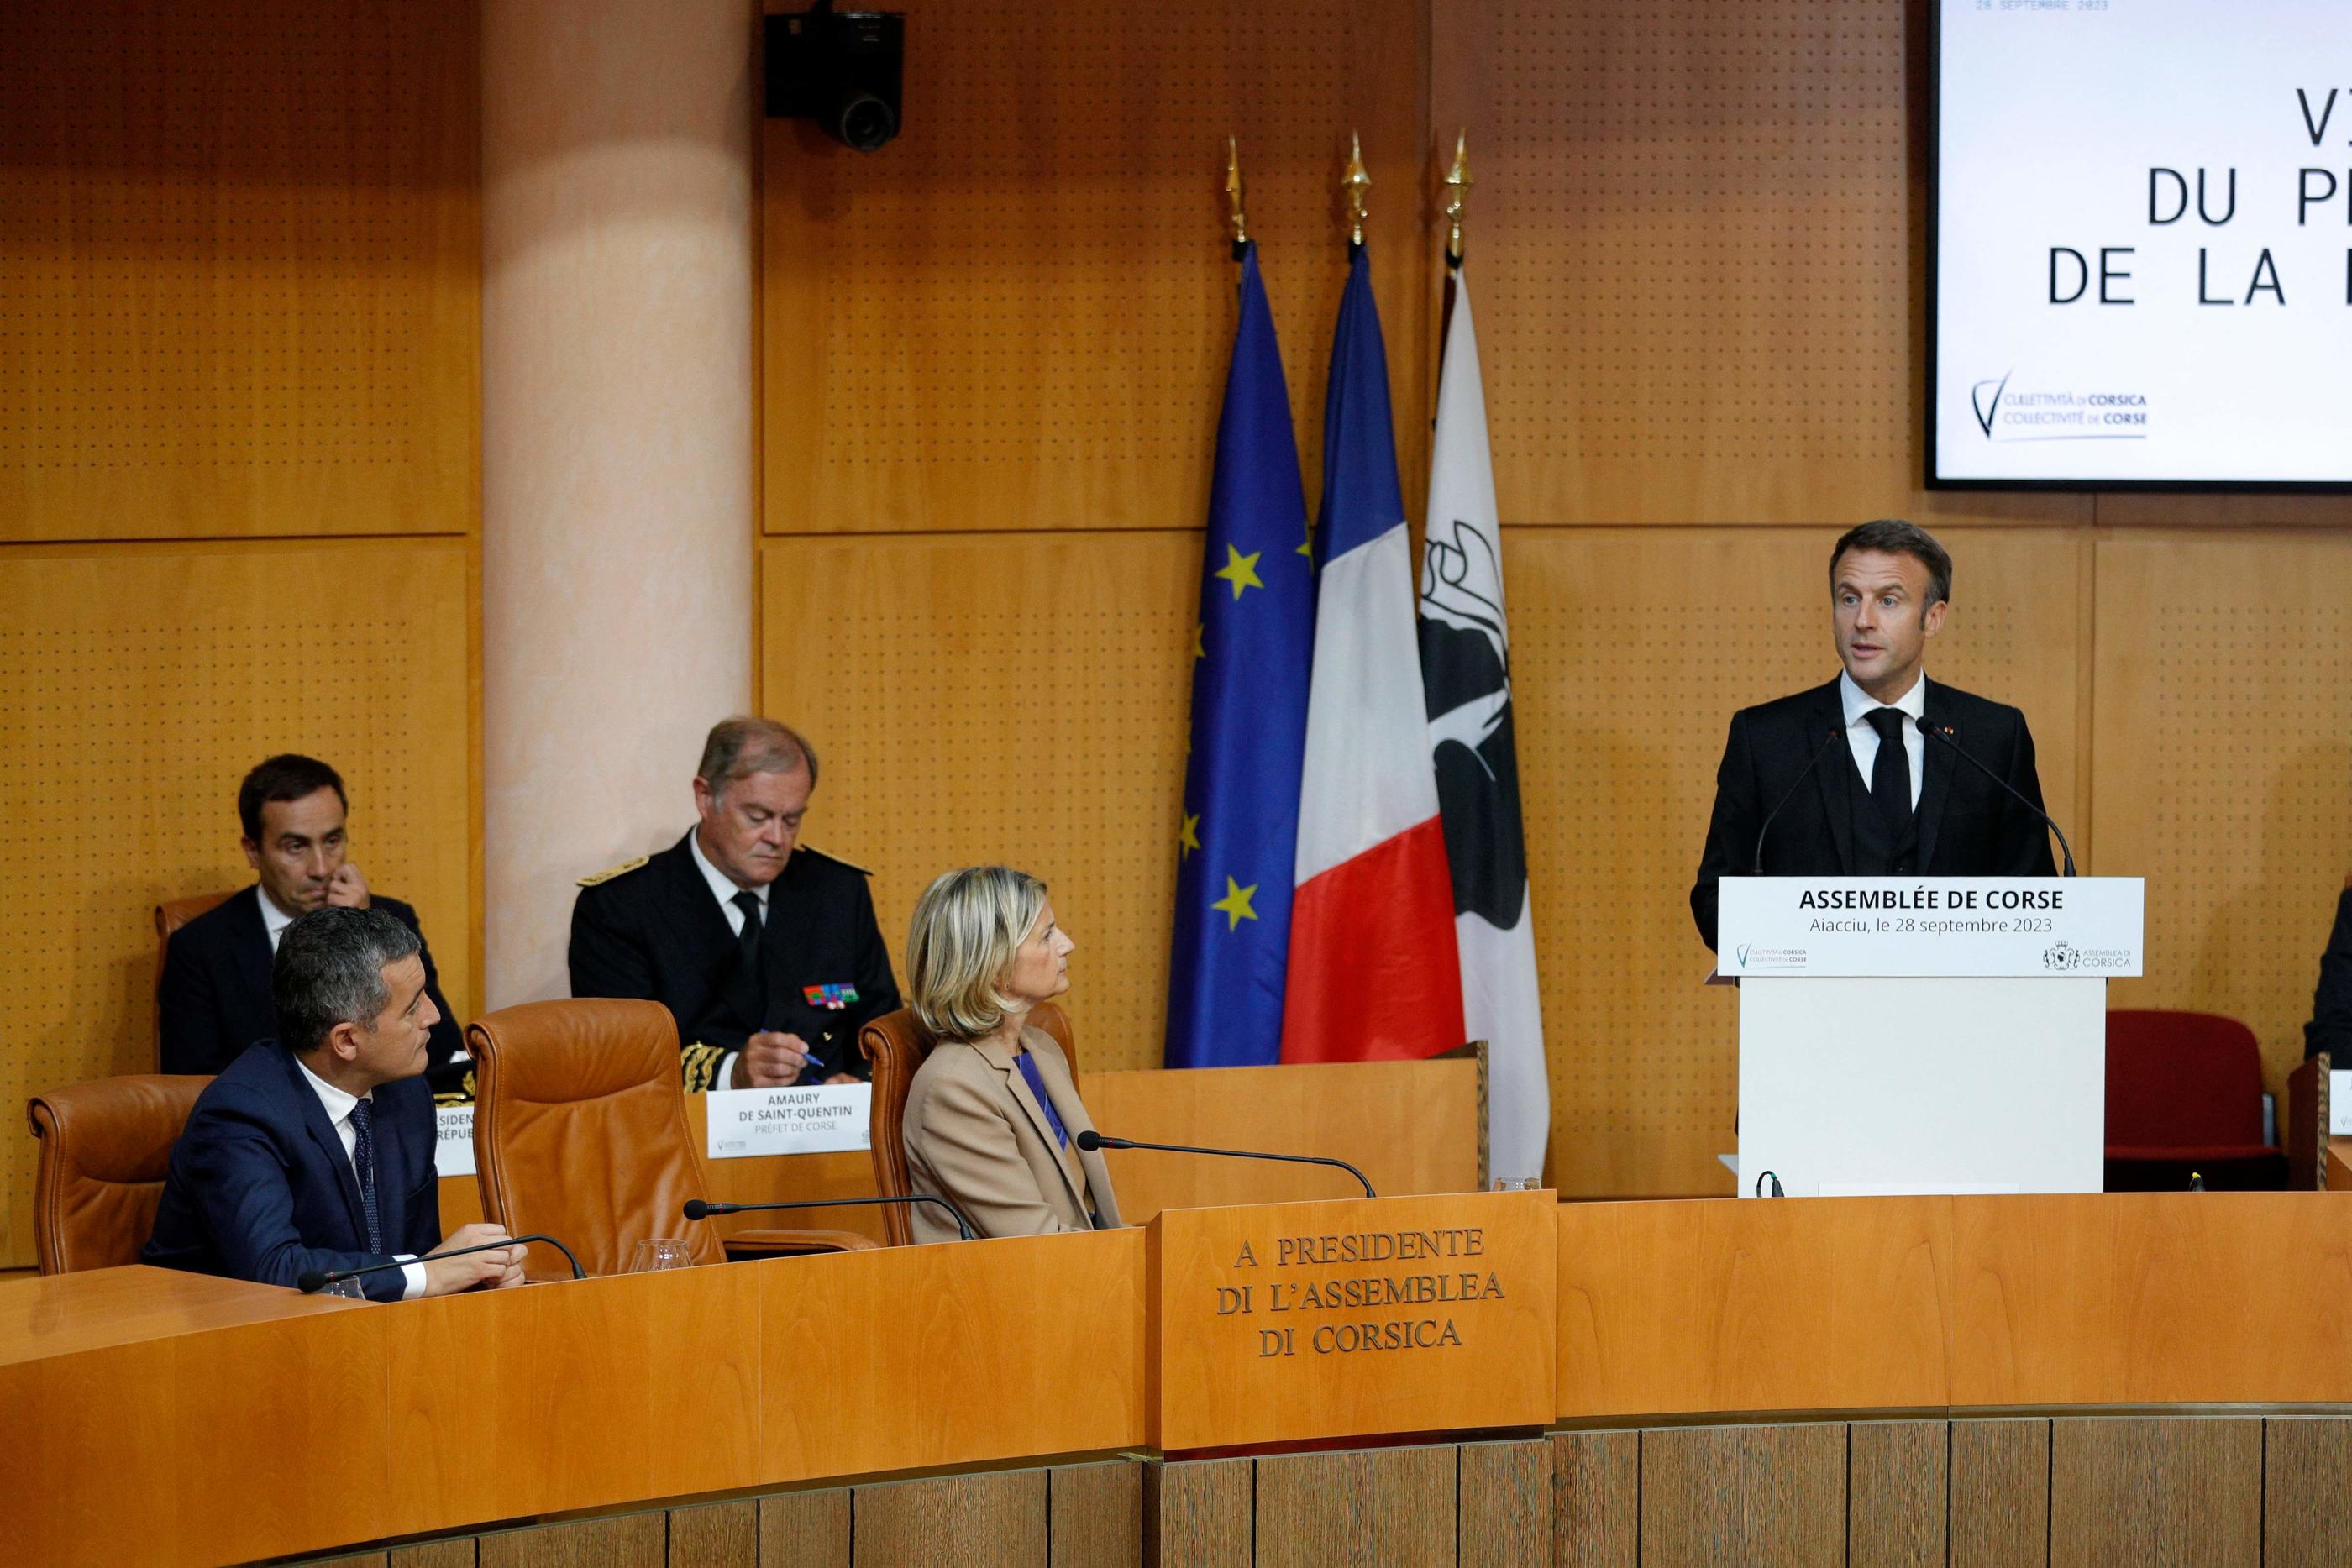 Le président s'adresse jeudi à l'assemblée de Corse. AFP / Pascal Pochard-Casabianca